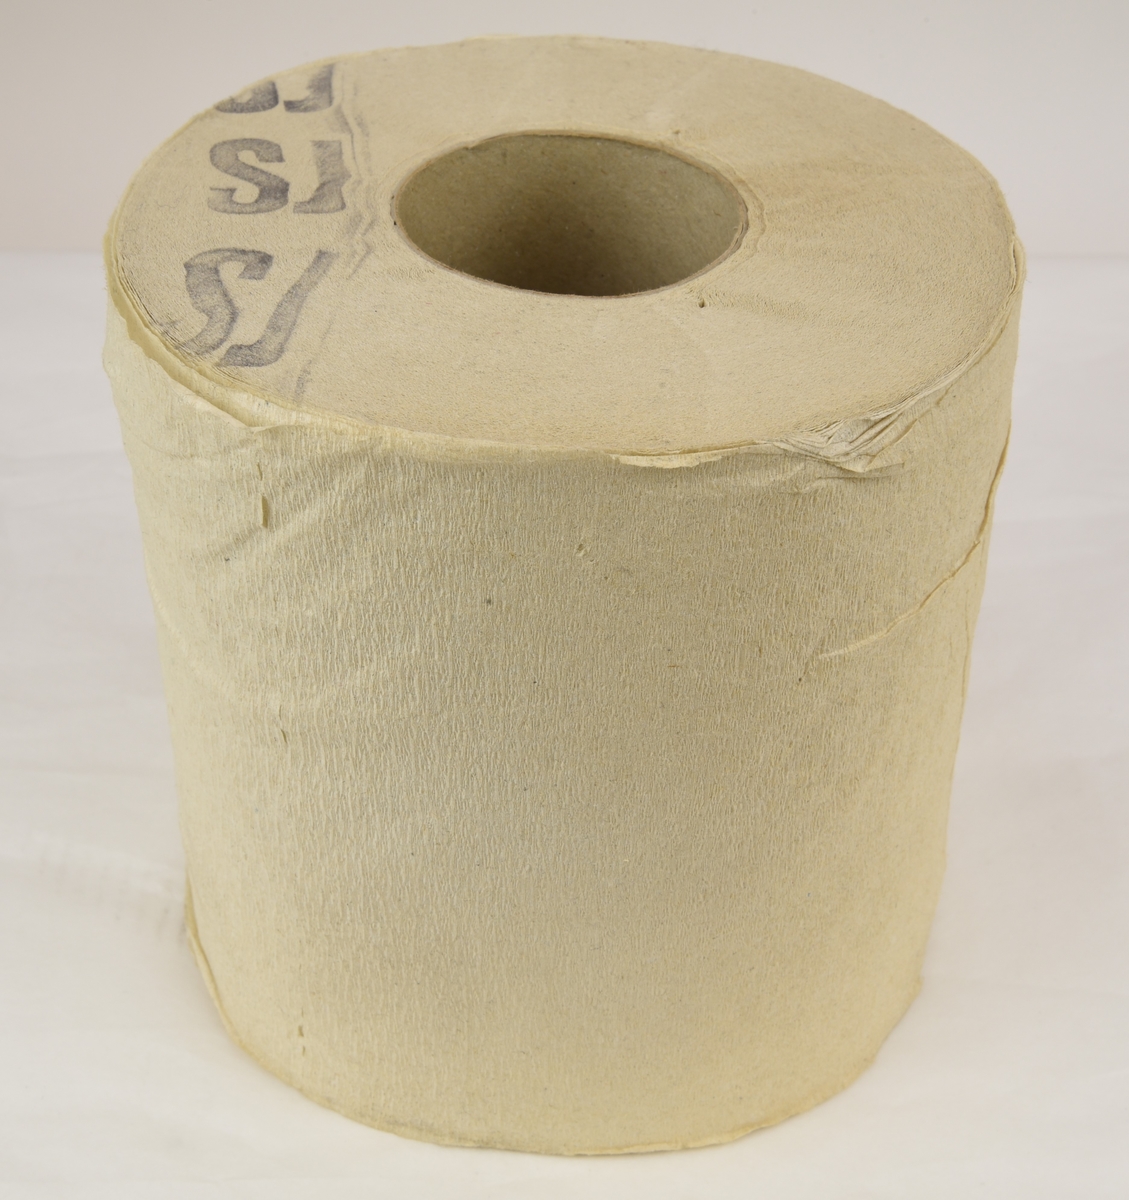 Toalettpappersrulle av svagt kräppat papper. Rullen är stämplad SJ på ena sidan med en mörk färg.